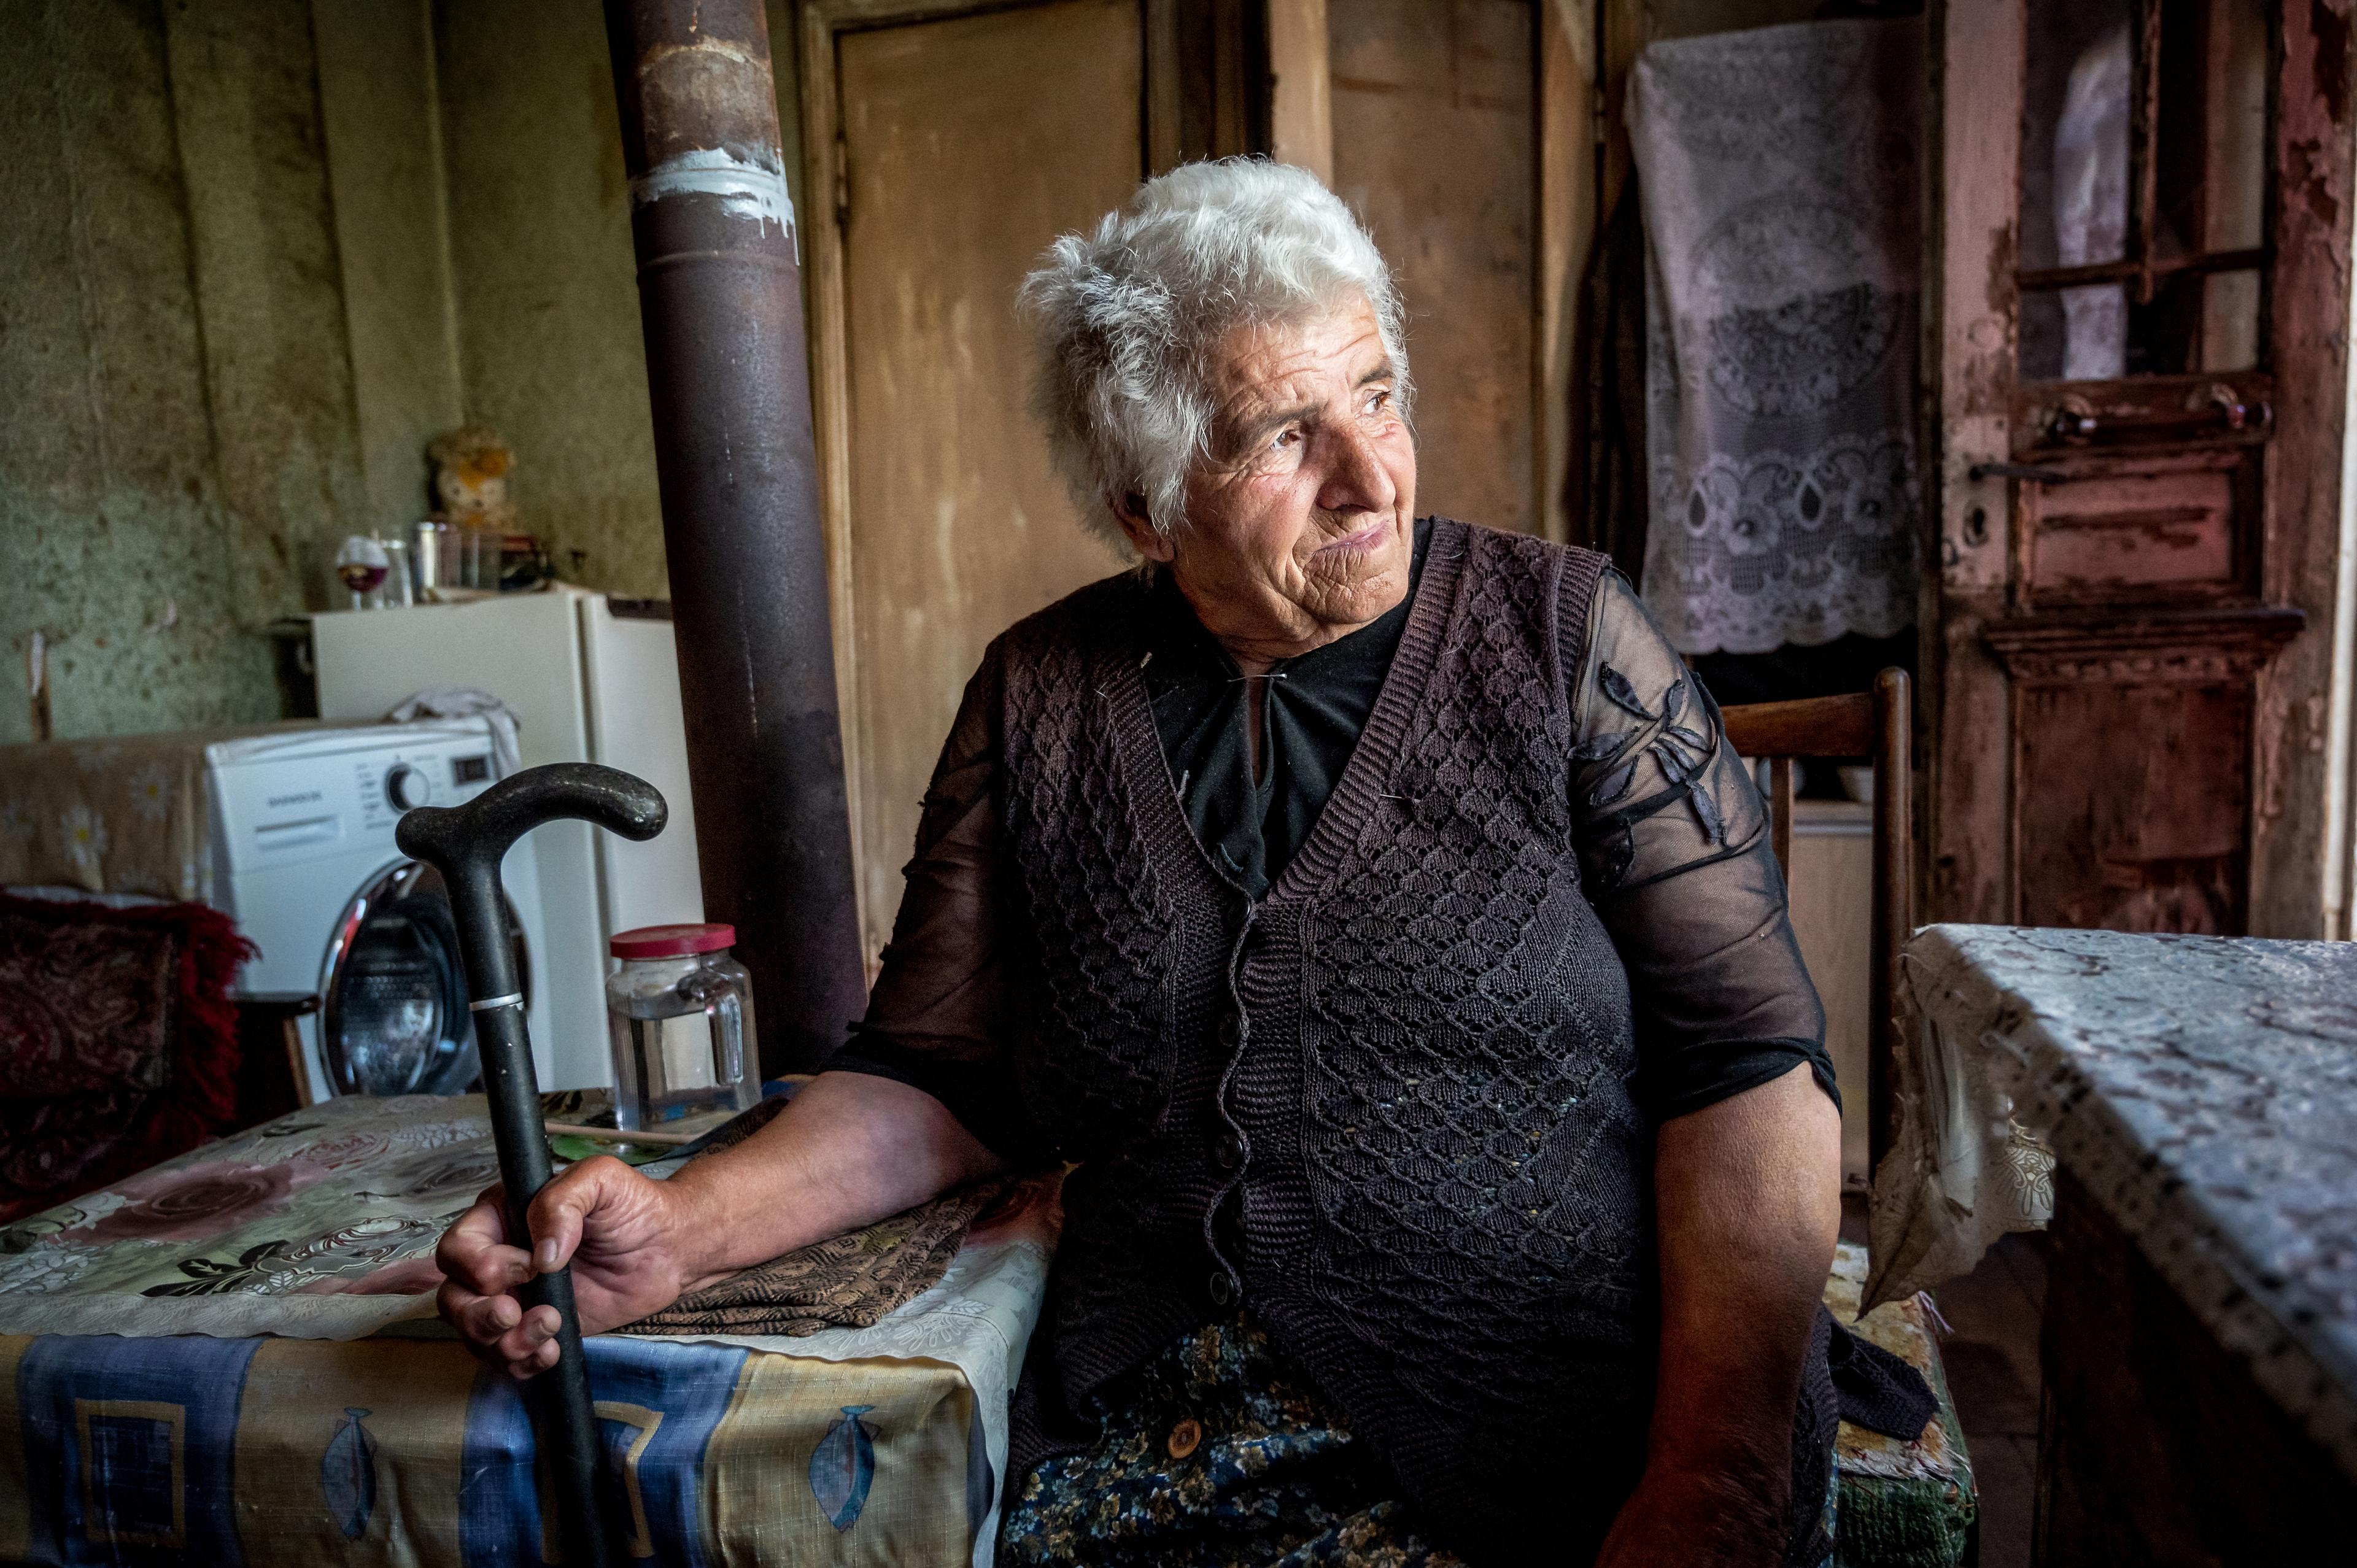 Une femme âgée est assise à une table et regarde pensivement par la fenêtre. Elle tient une canne dans sa main droite.